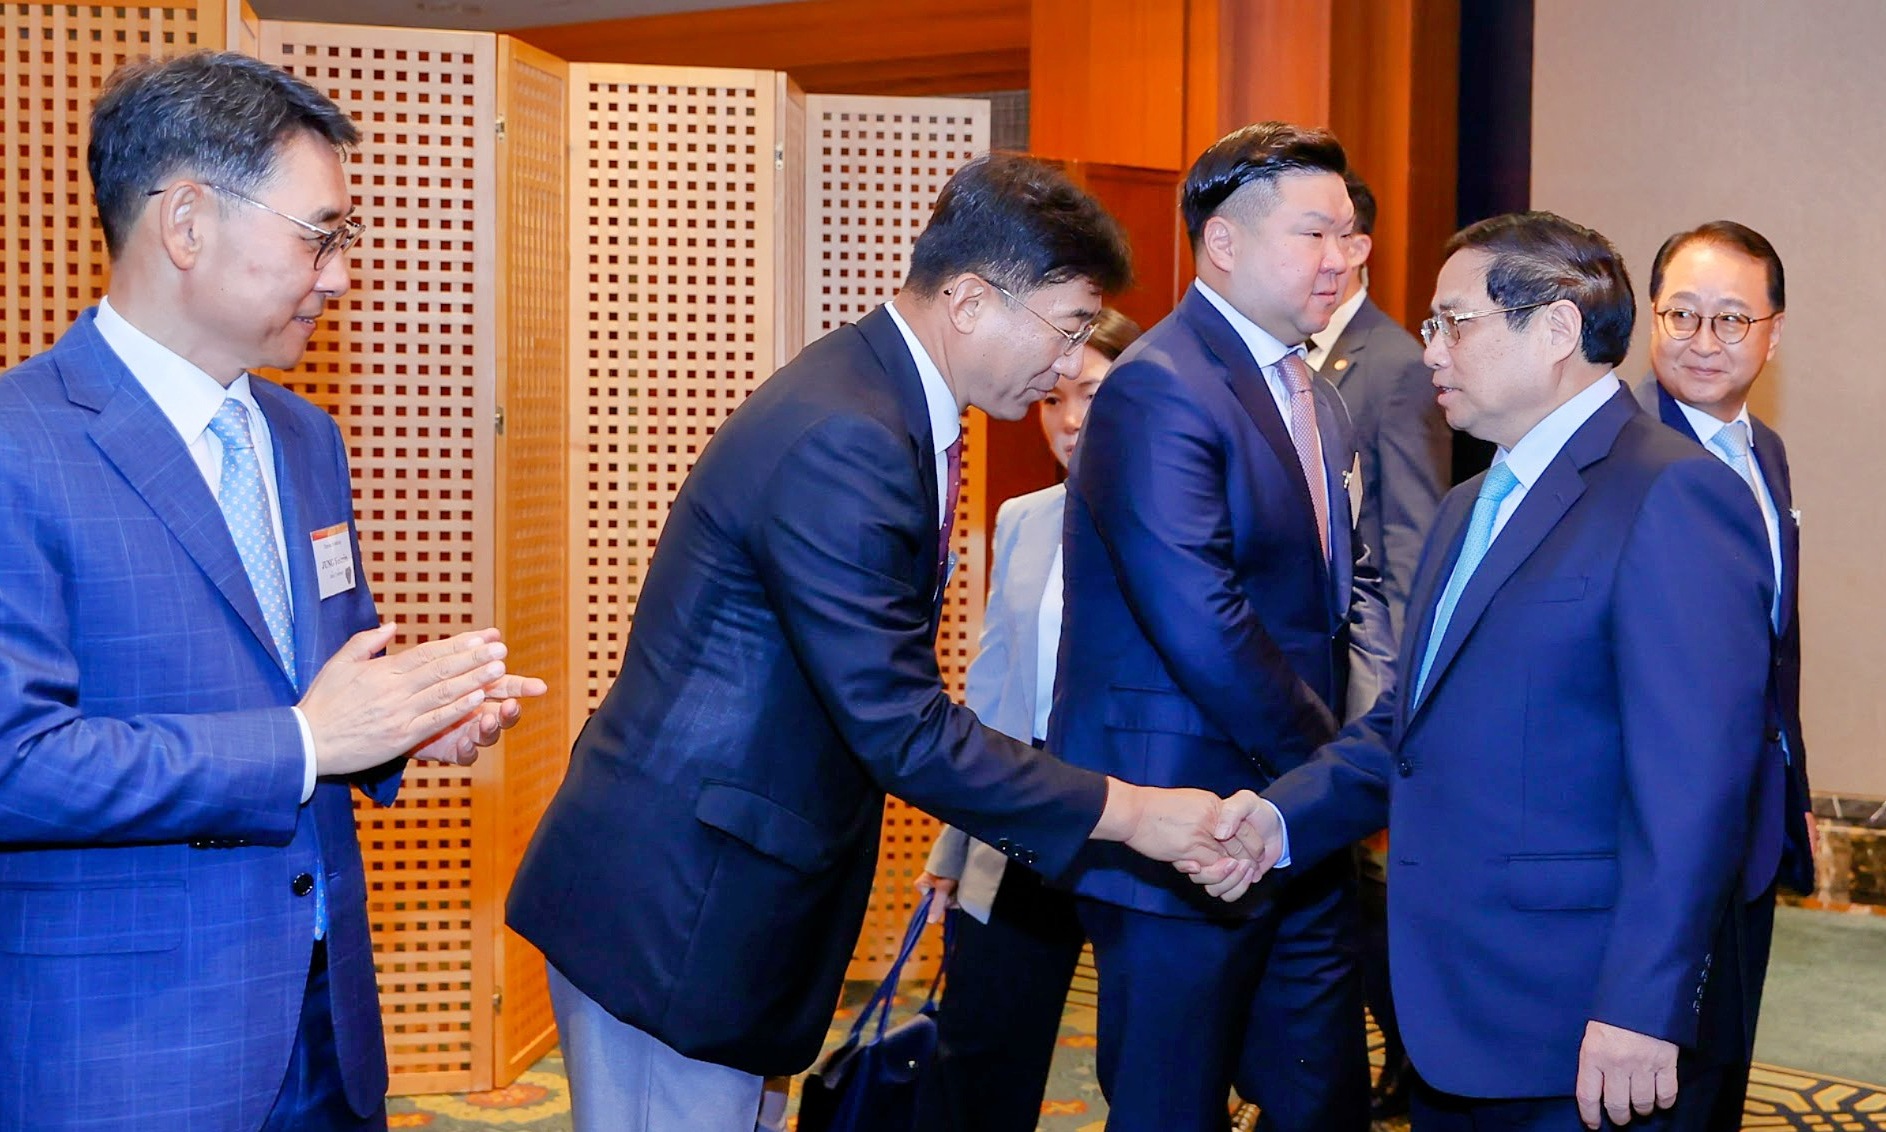 Các lãnh đạo tập đoàn hàng đầu Hàn Quốc dự tọa đàm cùng Thủ tướng Phạm Minh Chính, sáng 1/7, tại Seoul, Hàn Quốc. Ảnh: Nhật Bắc